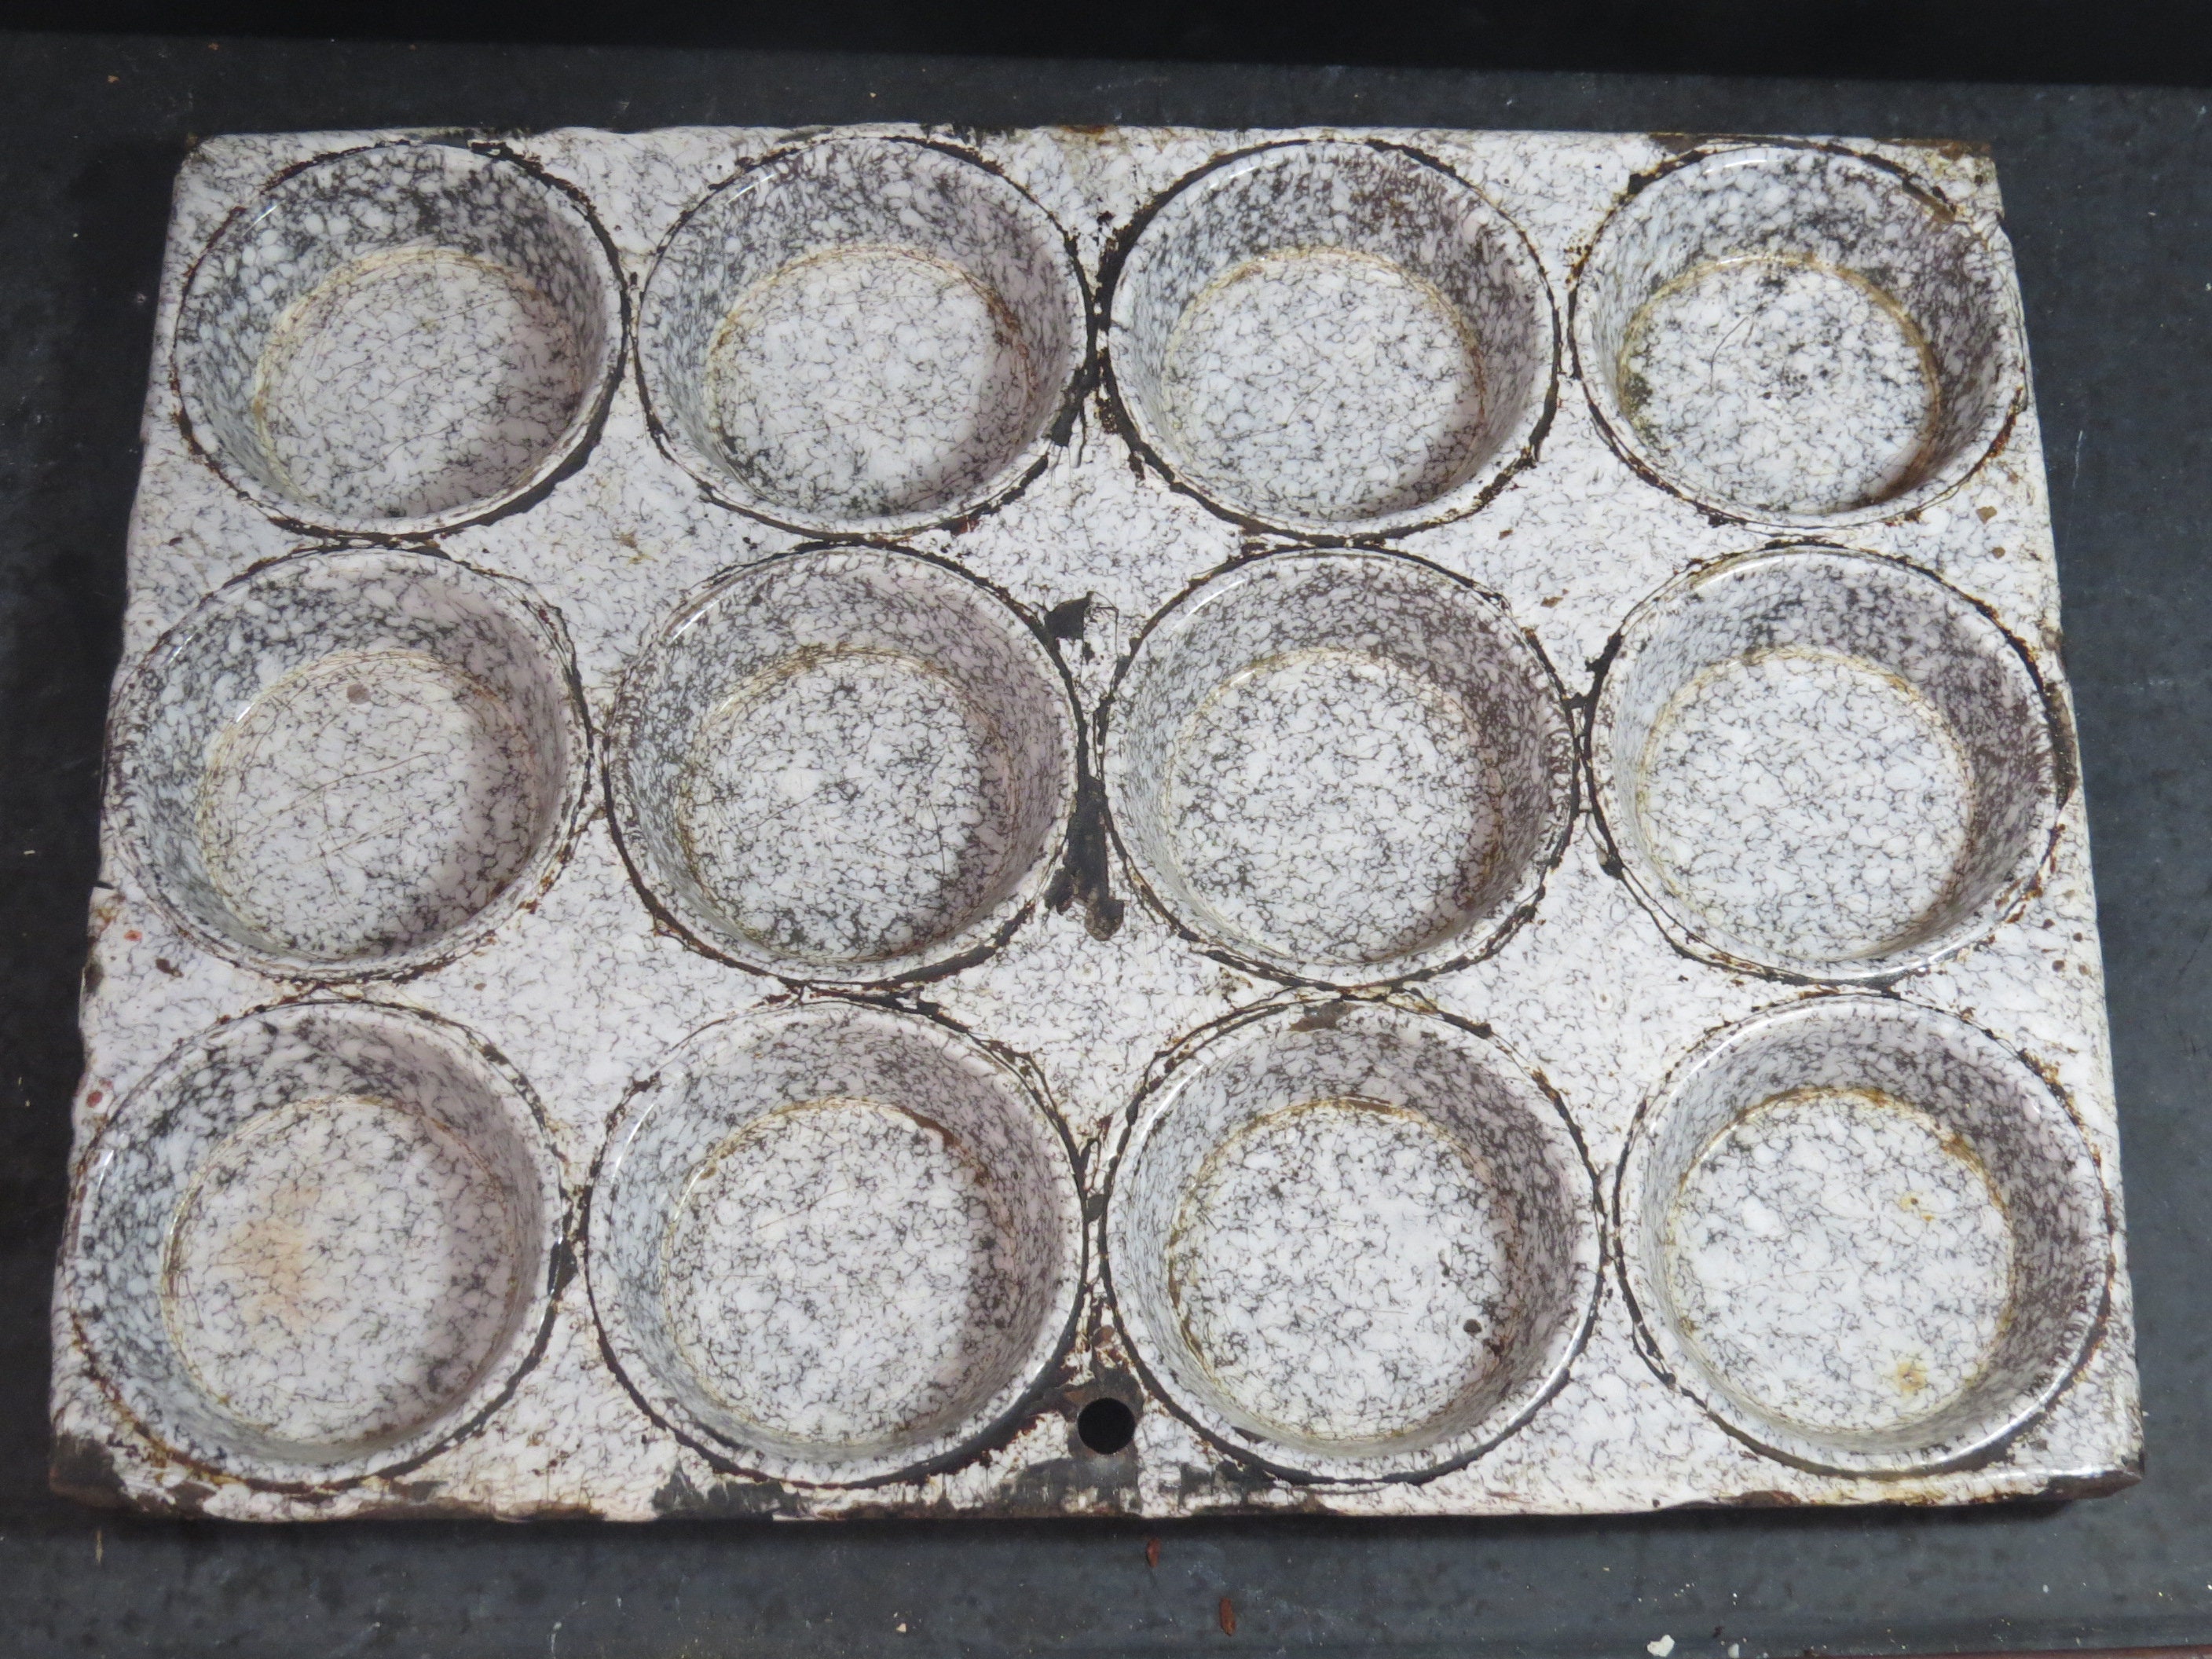 GRANITEWARE Vintage Muffin TOP Pan Grey Marble Enamel 